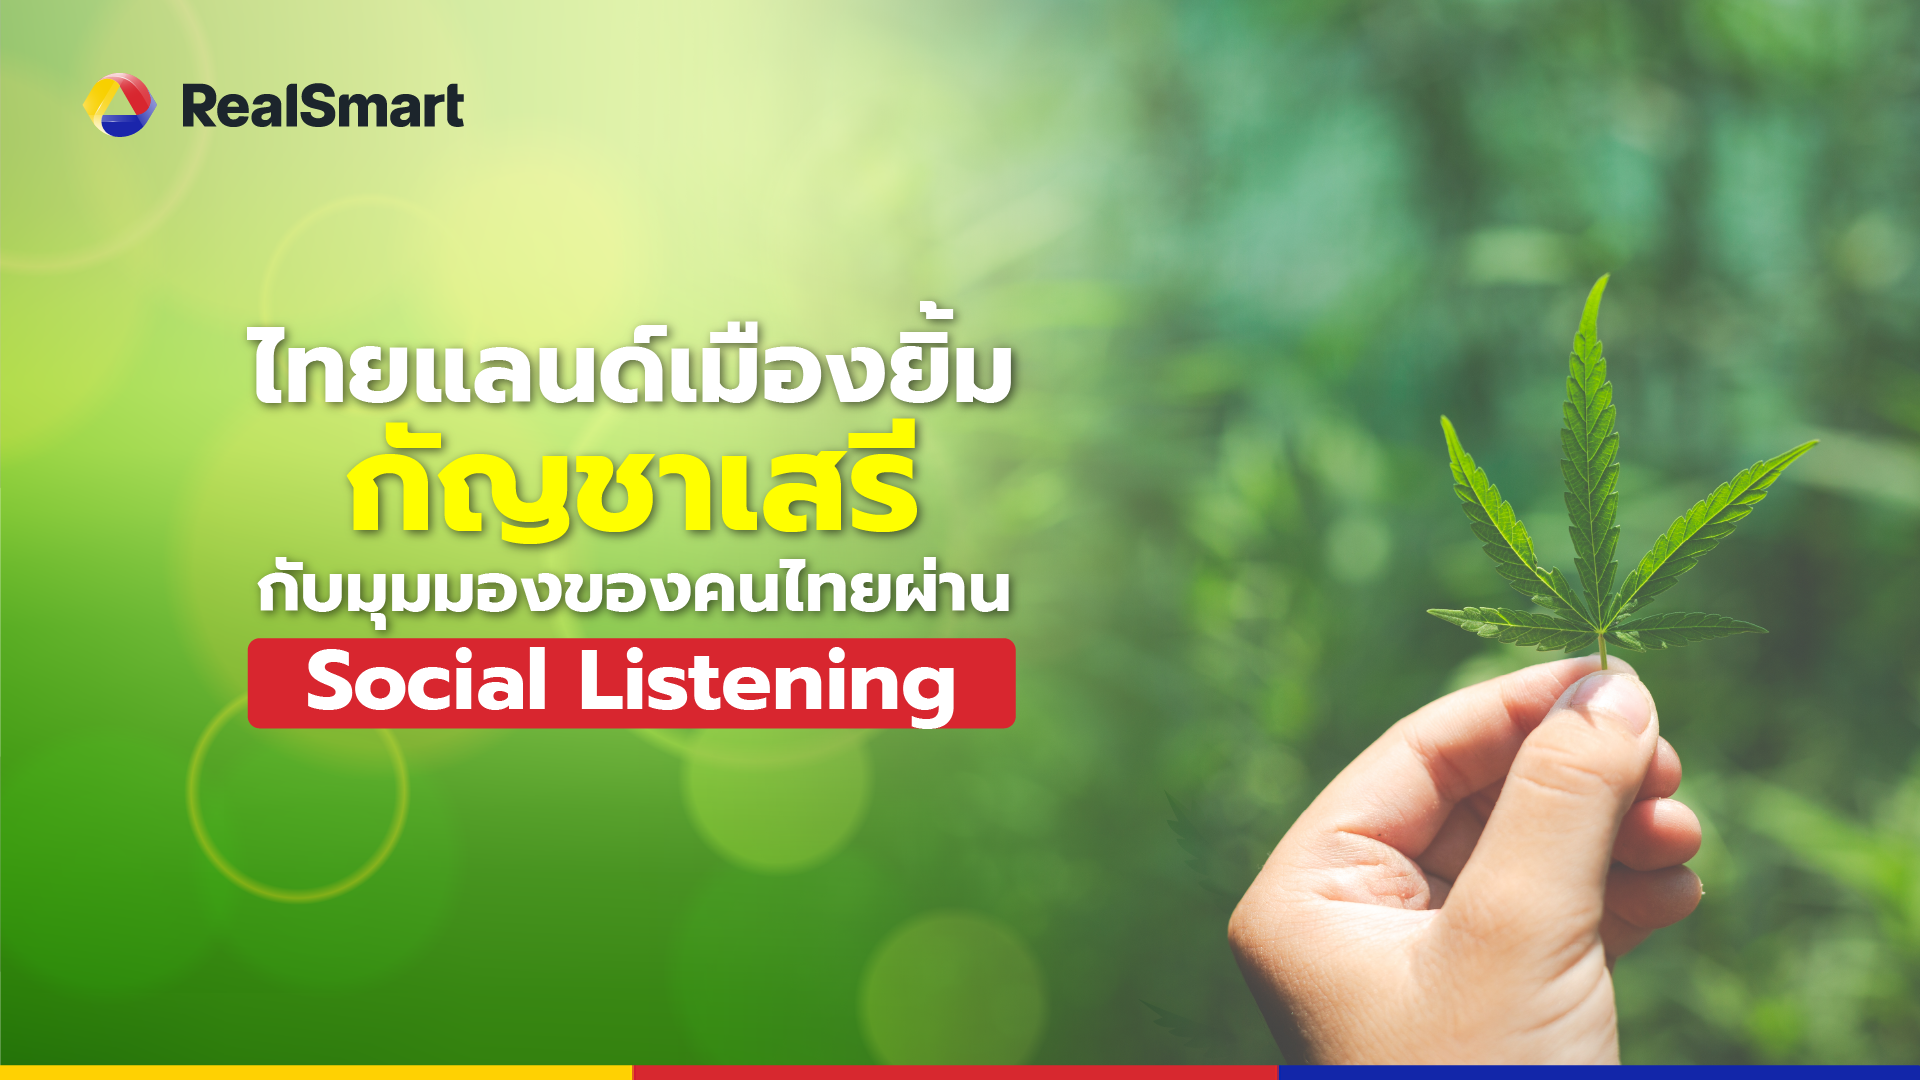 ไทยแลนด์เมืองยิ้ม กัญชาเสรีกับมุมมองของคนไทยผ่าน Social Listening 